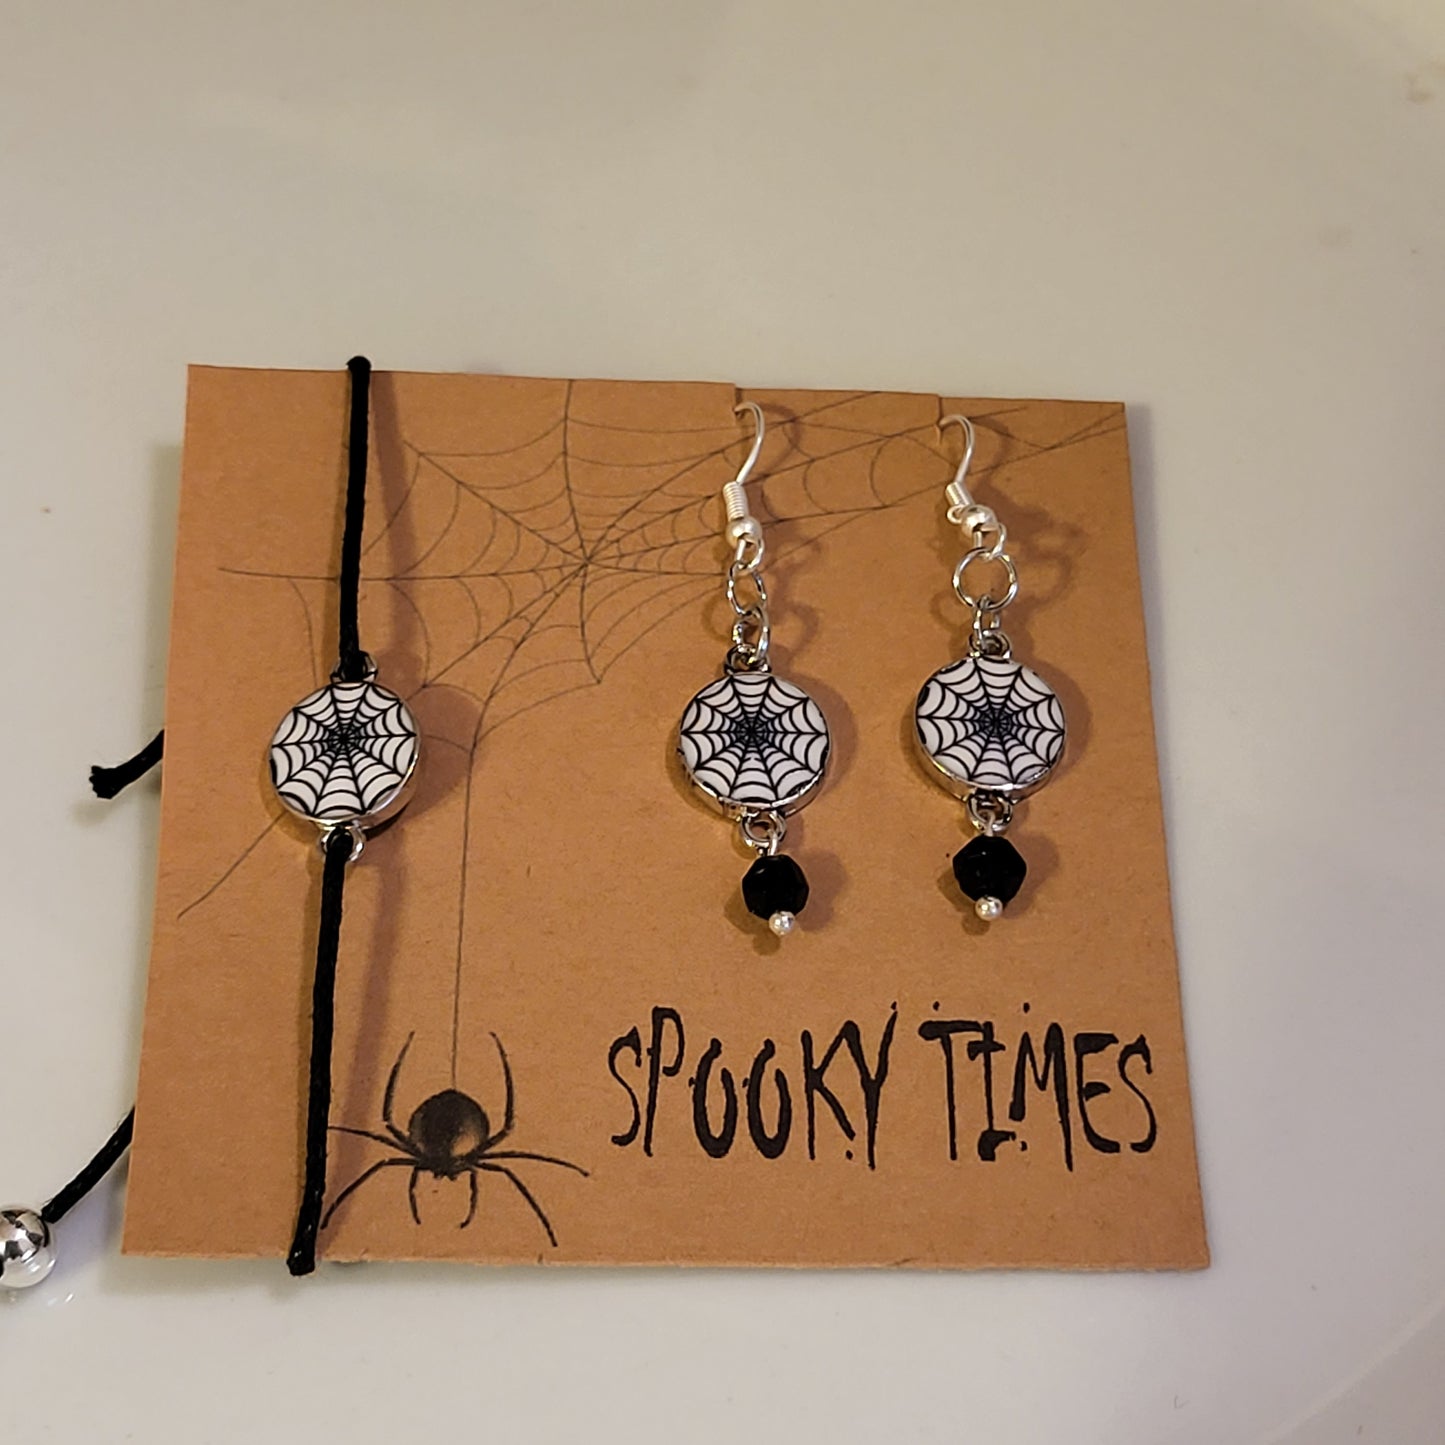 Spooky Times Sliding Knot Bracelet & Earrings